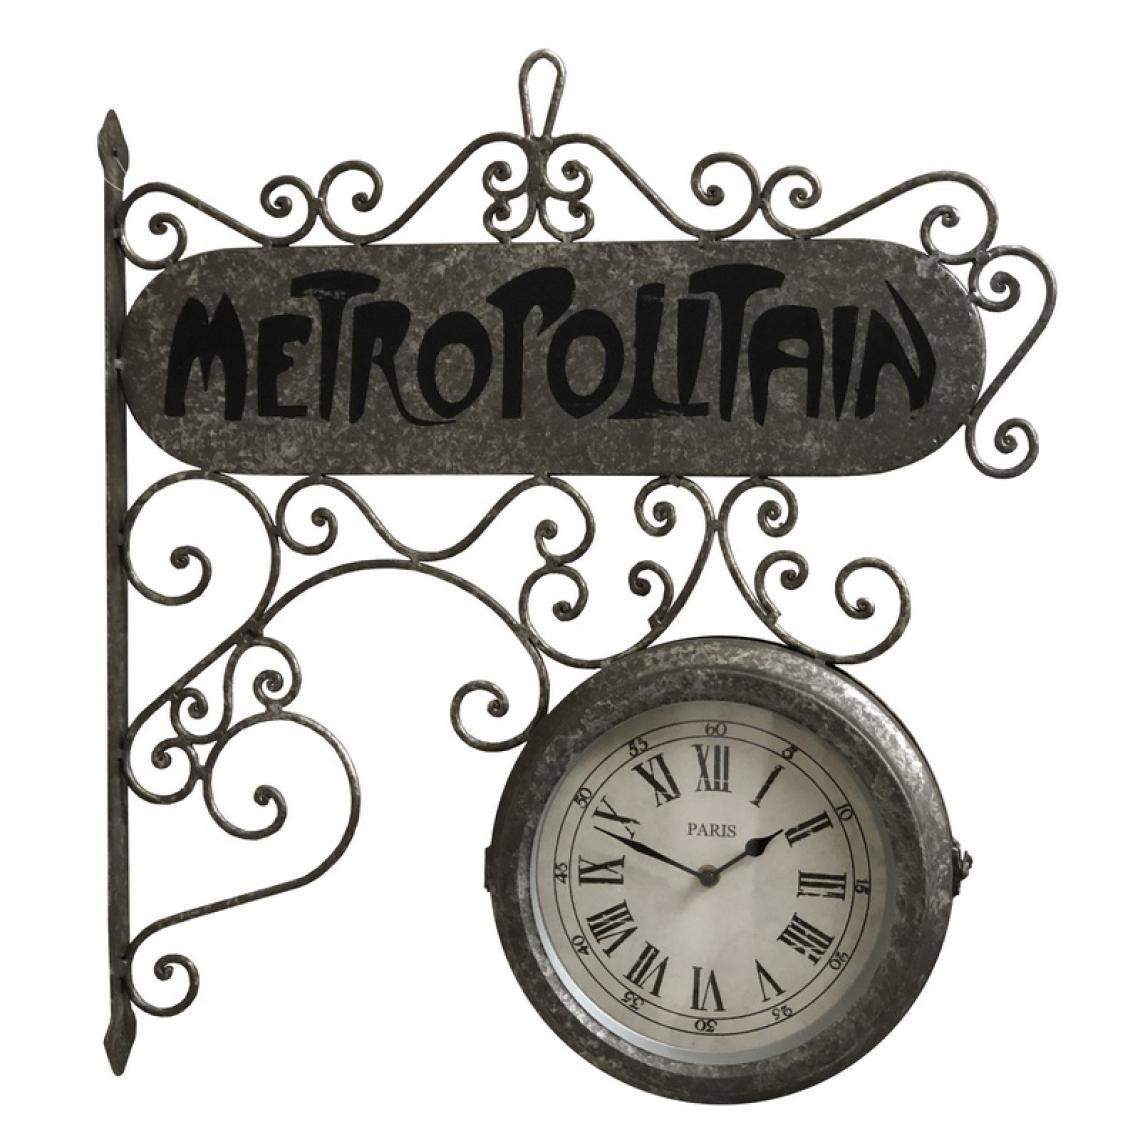 L'Originale Deco - Horloge Industriel Horloge de Gare Double Face 59 cm x 57cm x 11.50 cm - Horloges, pendules